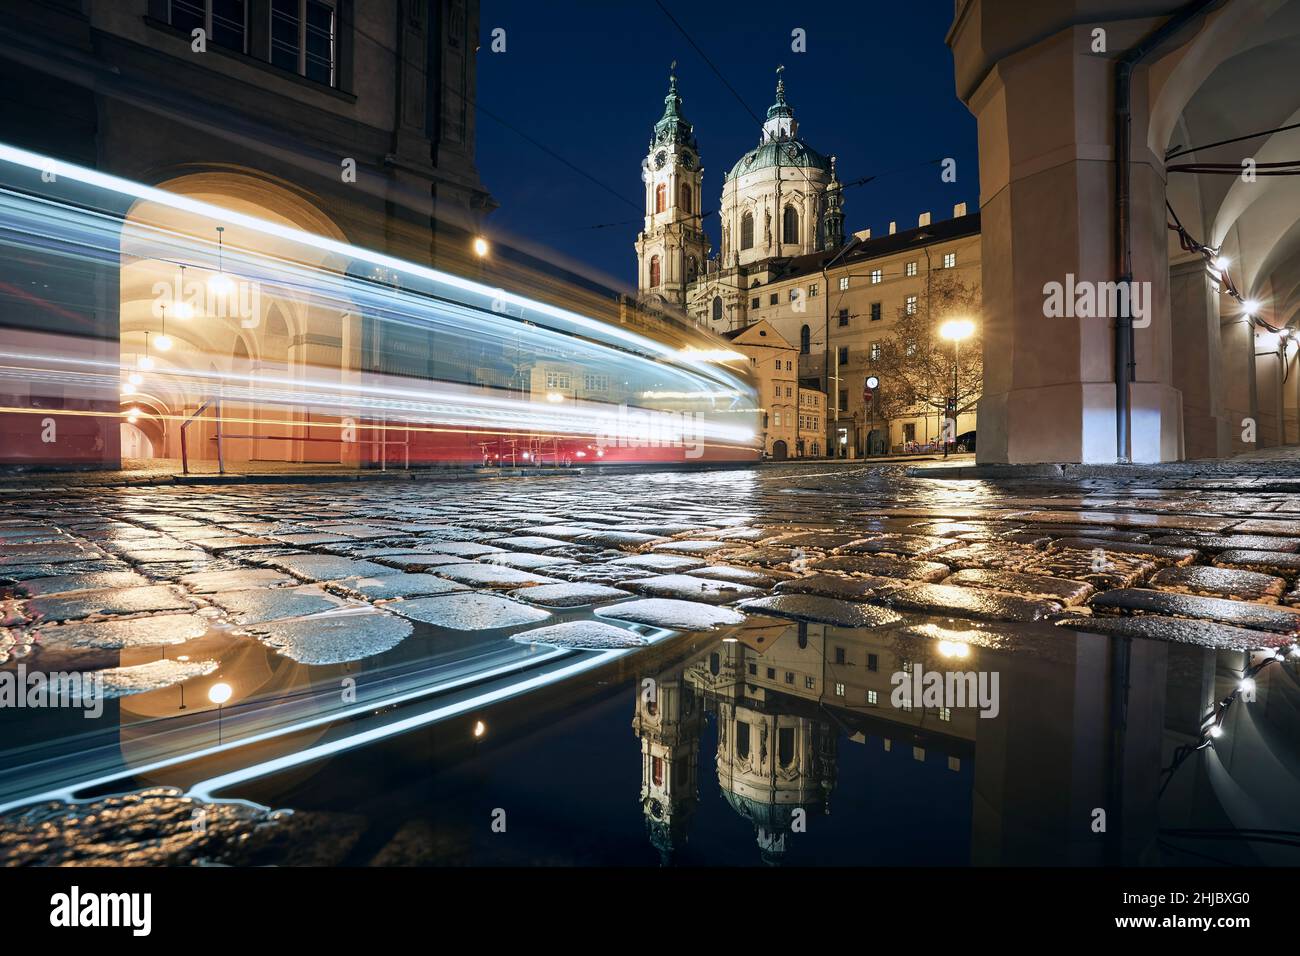 Leggero sentiero di tram che passa tra edifici storici. Riflessione in pozzanghere su strada bagnata. Città minore di Praga, Repubblica Ceca. Foto Stock